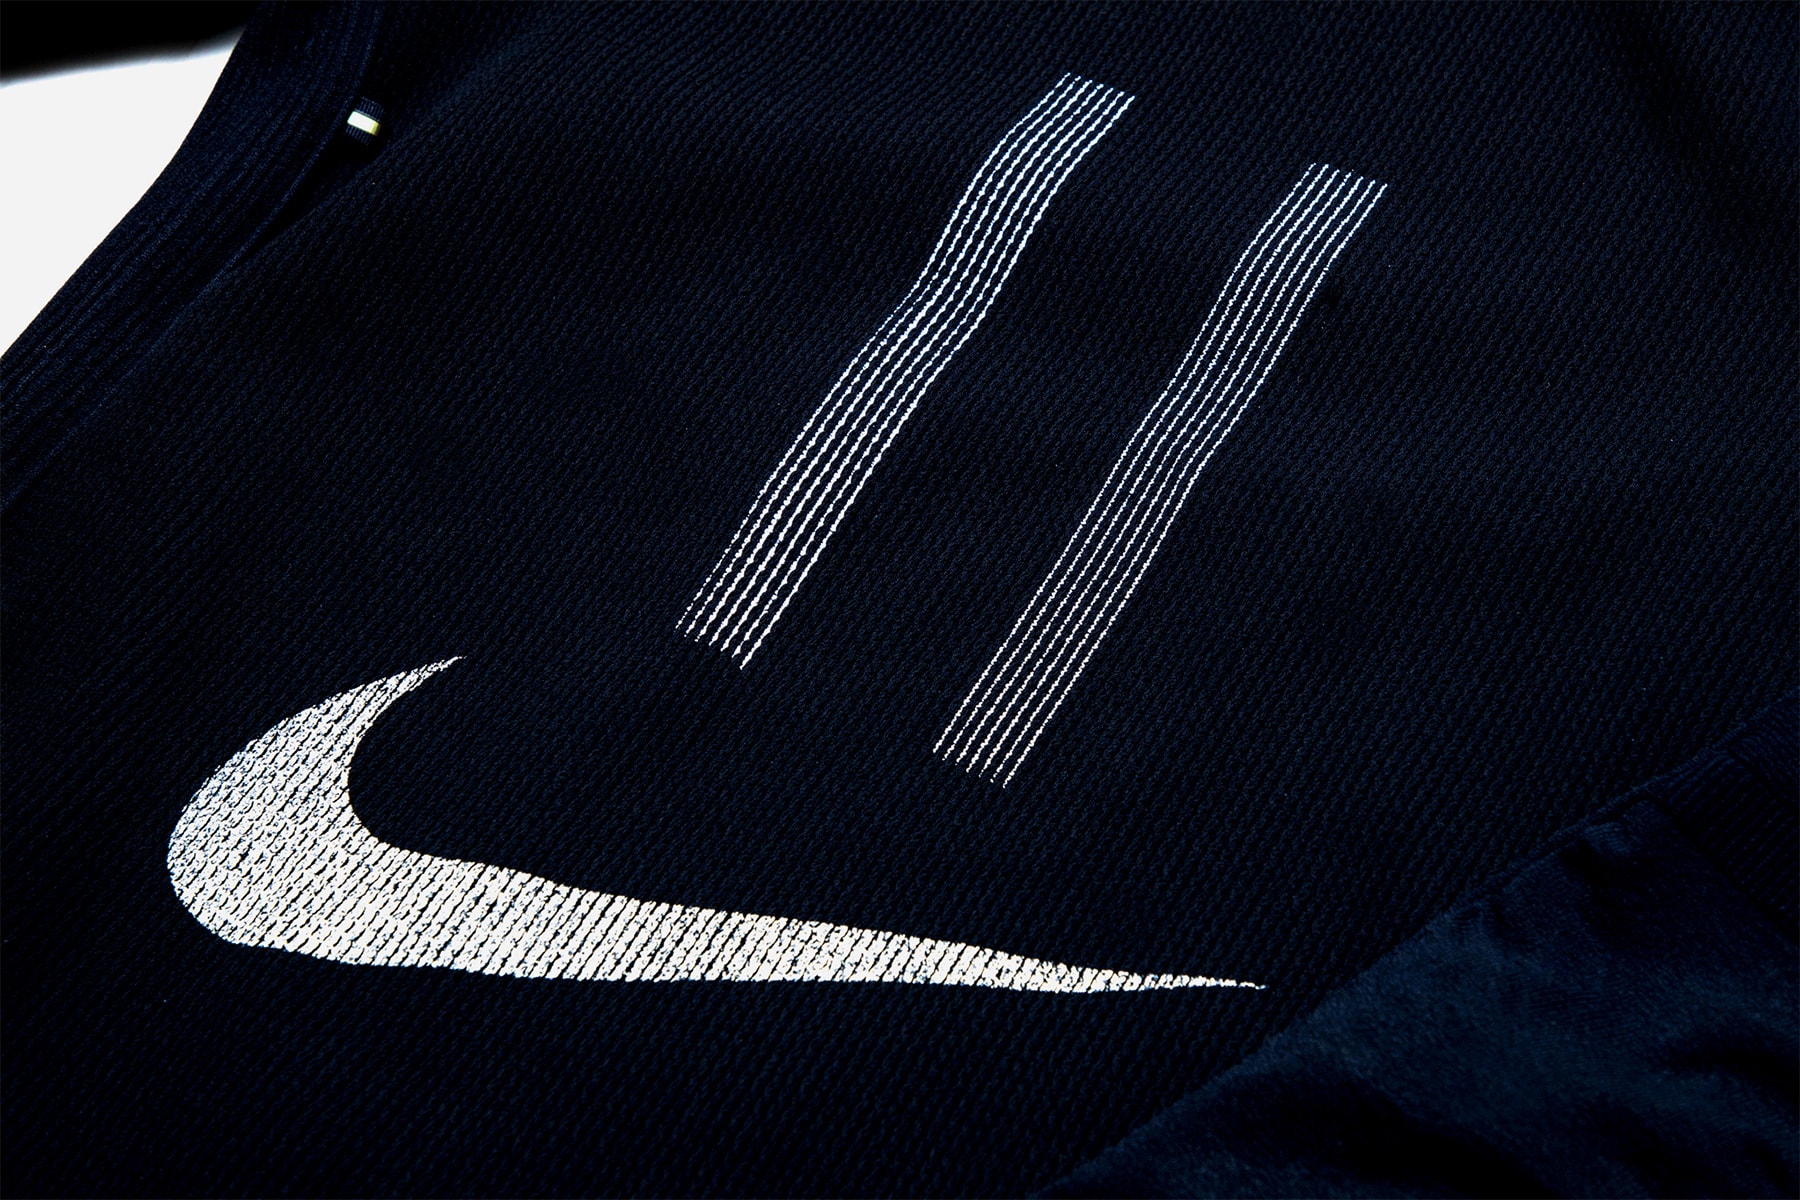 Nike x キム・ジョーンズによる最新カプセル “Football Reimagined” のアパレルアイテムのフォーカス